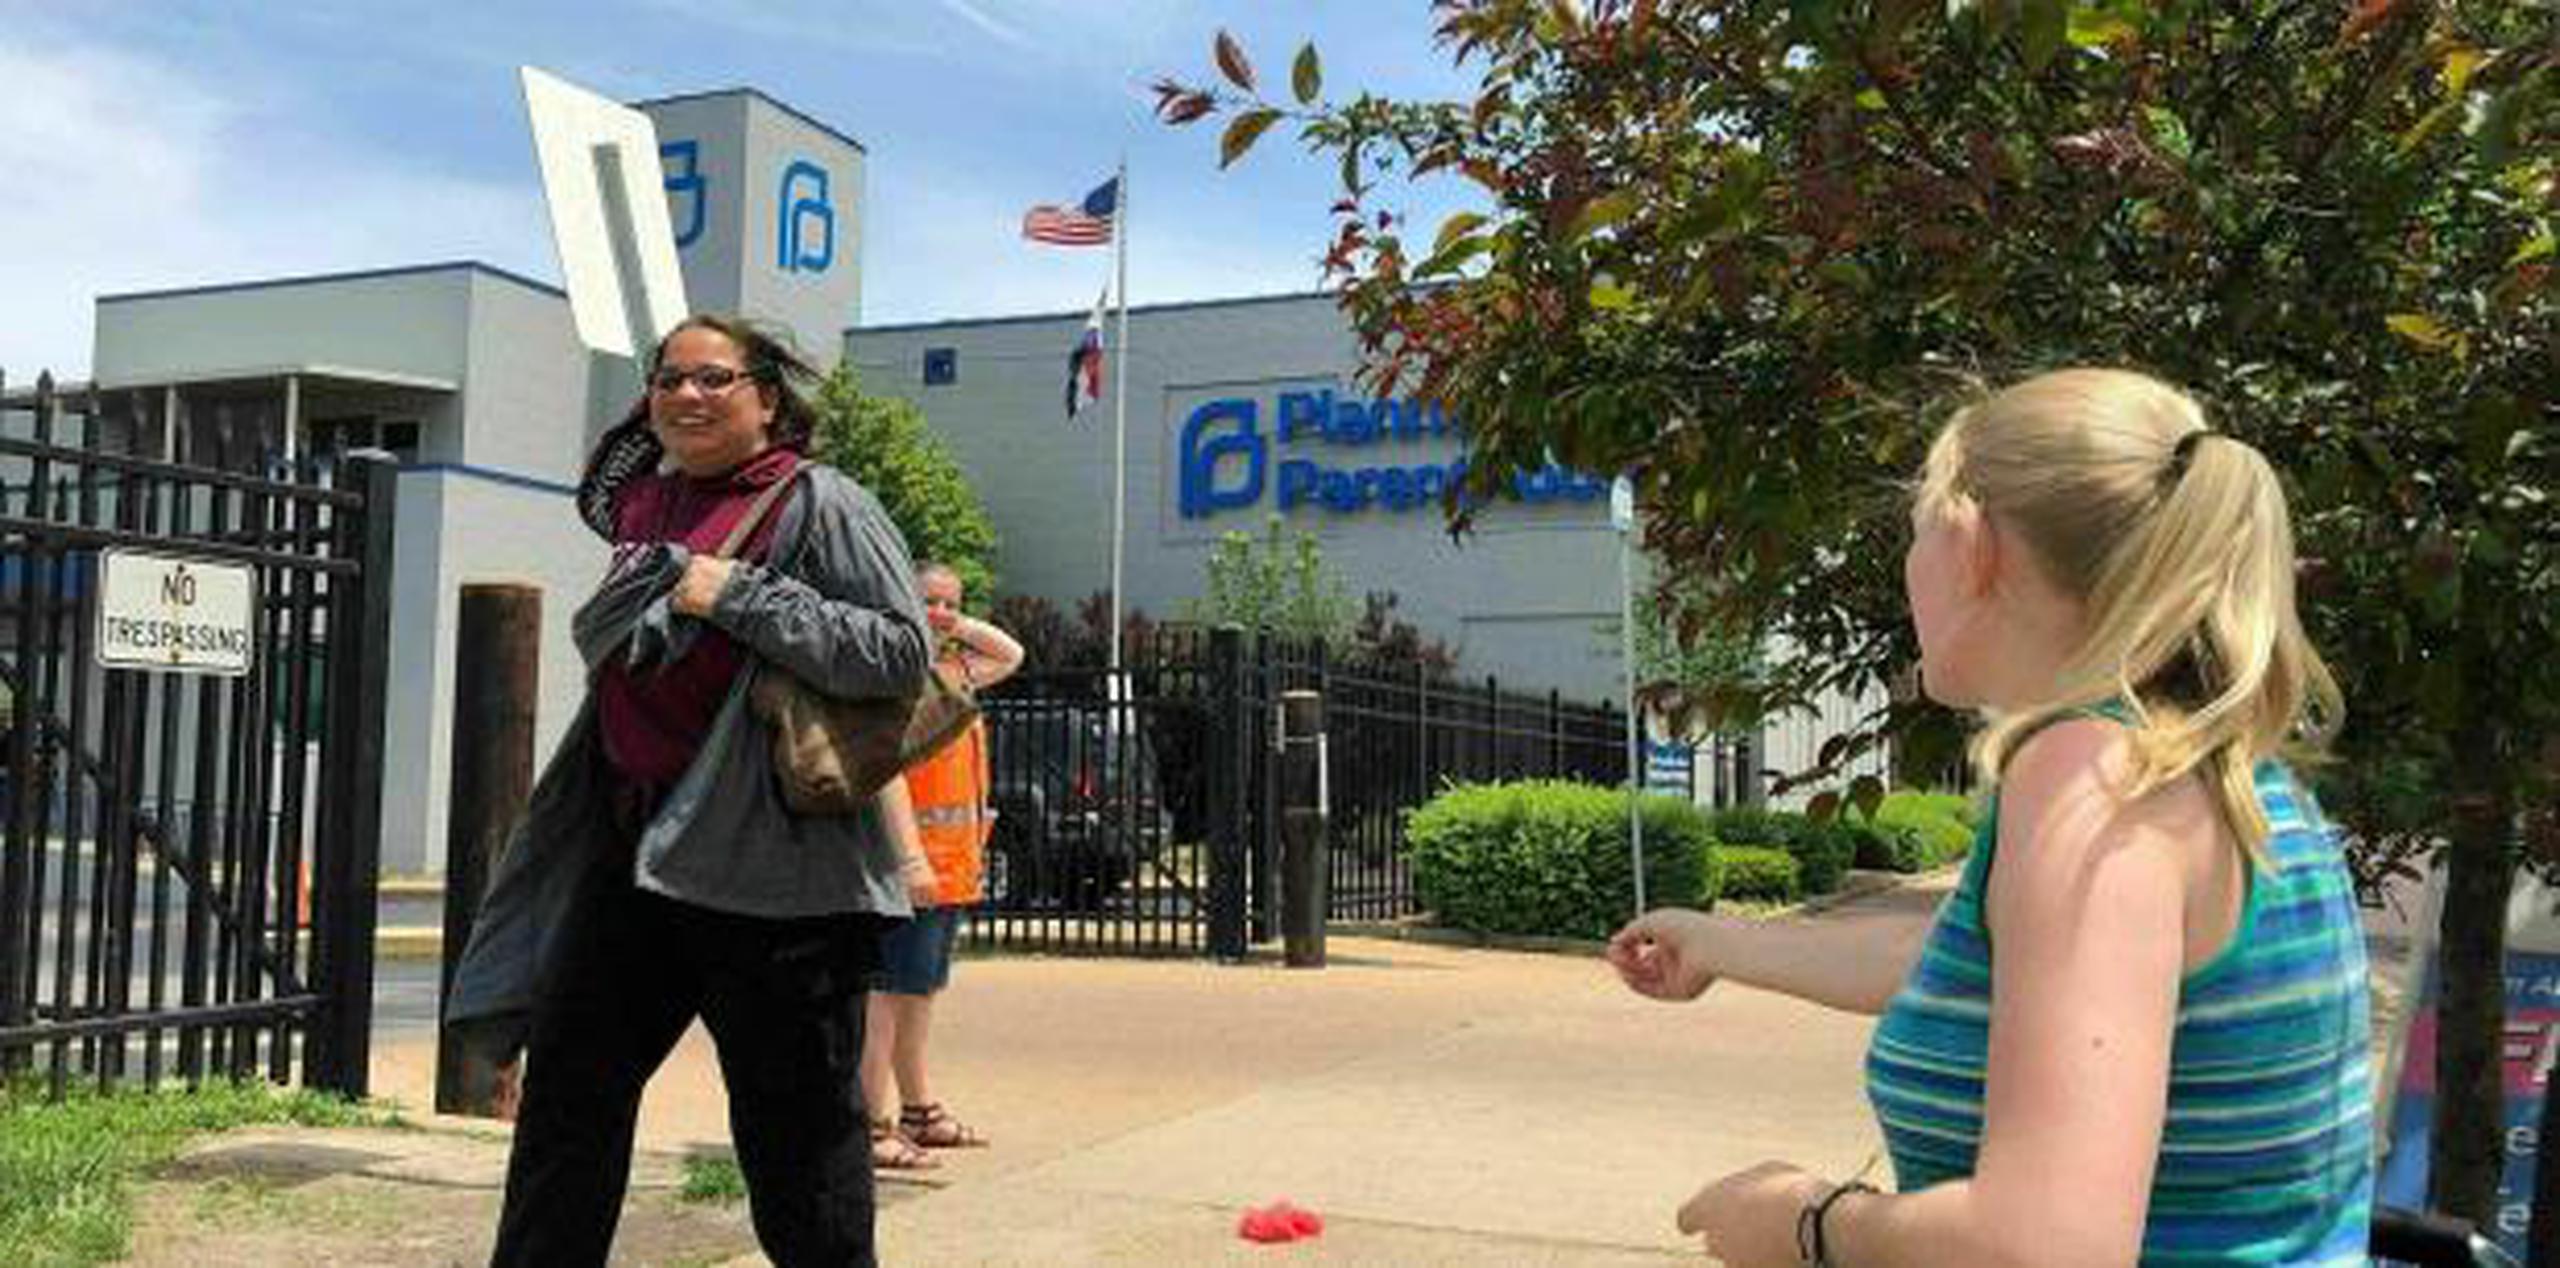 De no ser renovada la licencia de la clínica Planned Parenthood, Missouri se convertirá en el primer estado en no tener una clínica de aborto desde el fallo de Roe Vs. Wade de la Corte Suprema en 1973. (AP / Jim Salter)